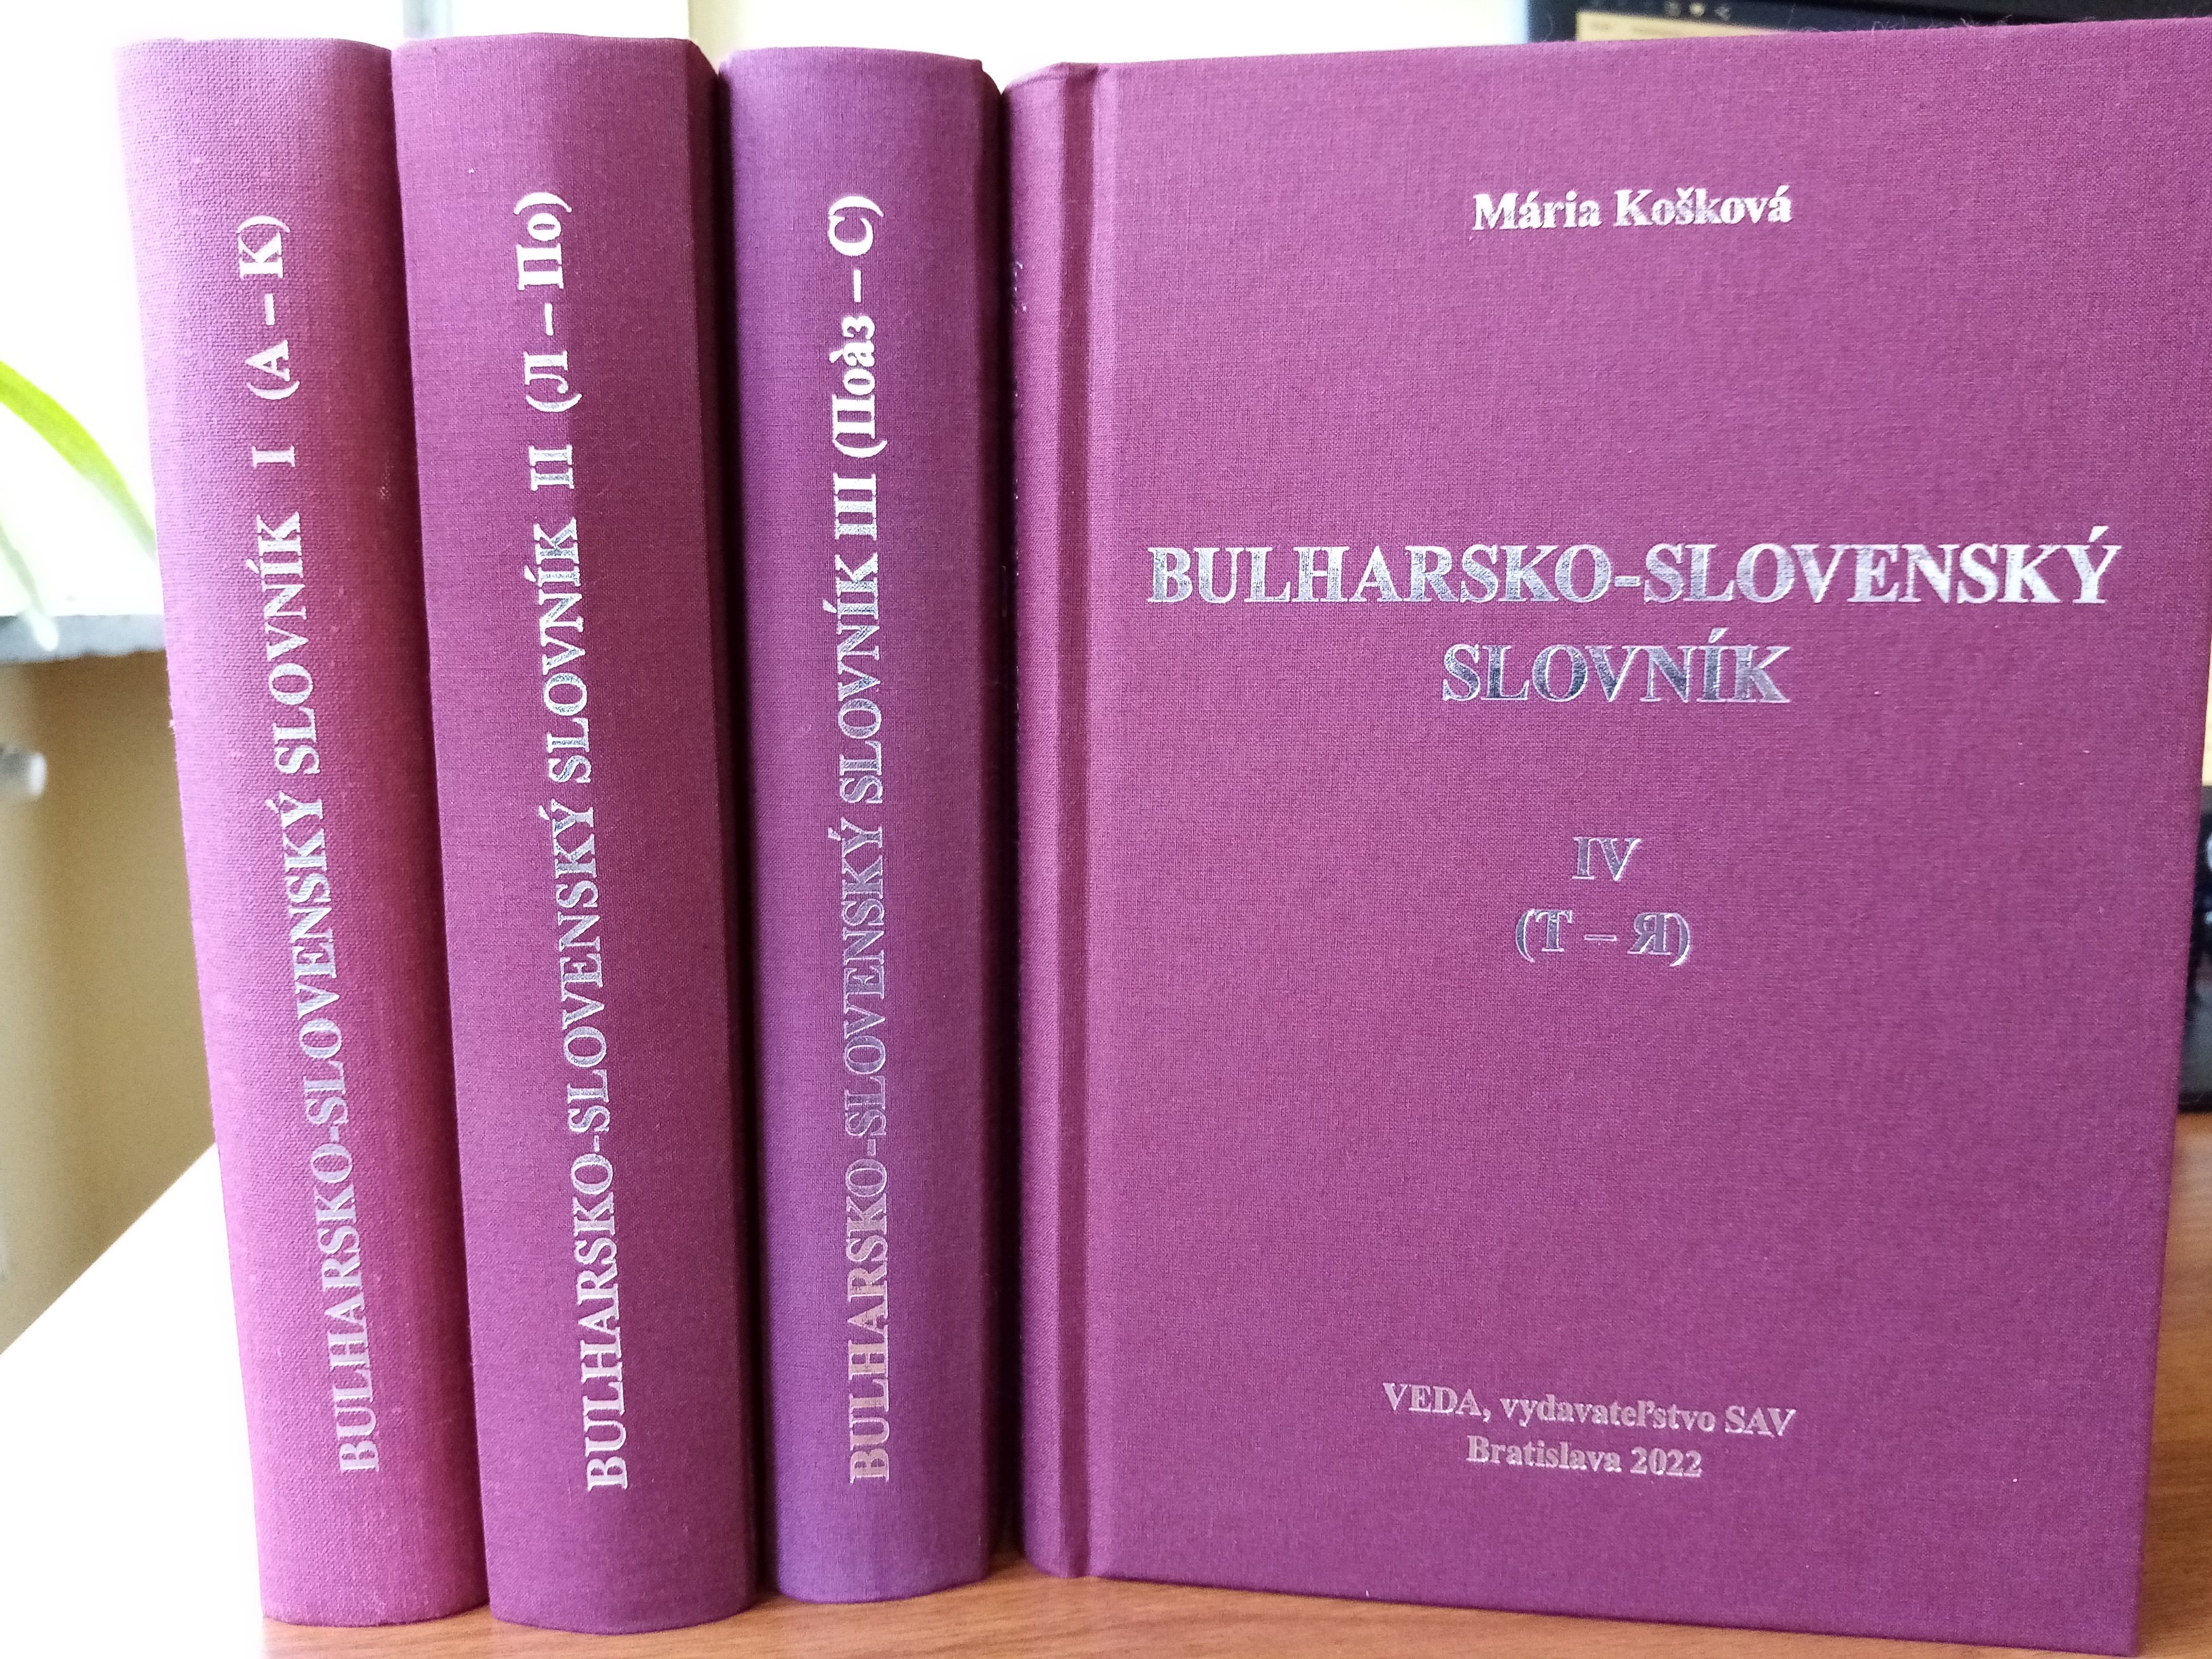 (Български) Представяне на „Българско-словашки речник“ в четири тома на Мария Кошкова